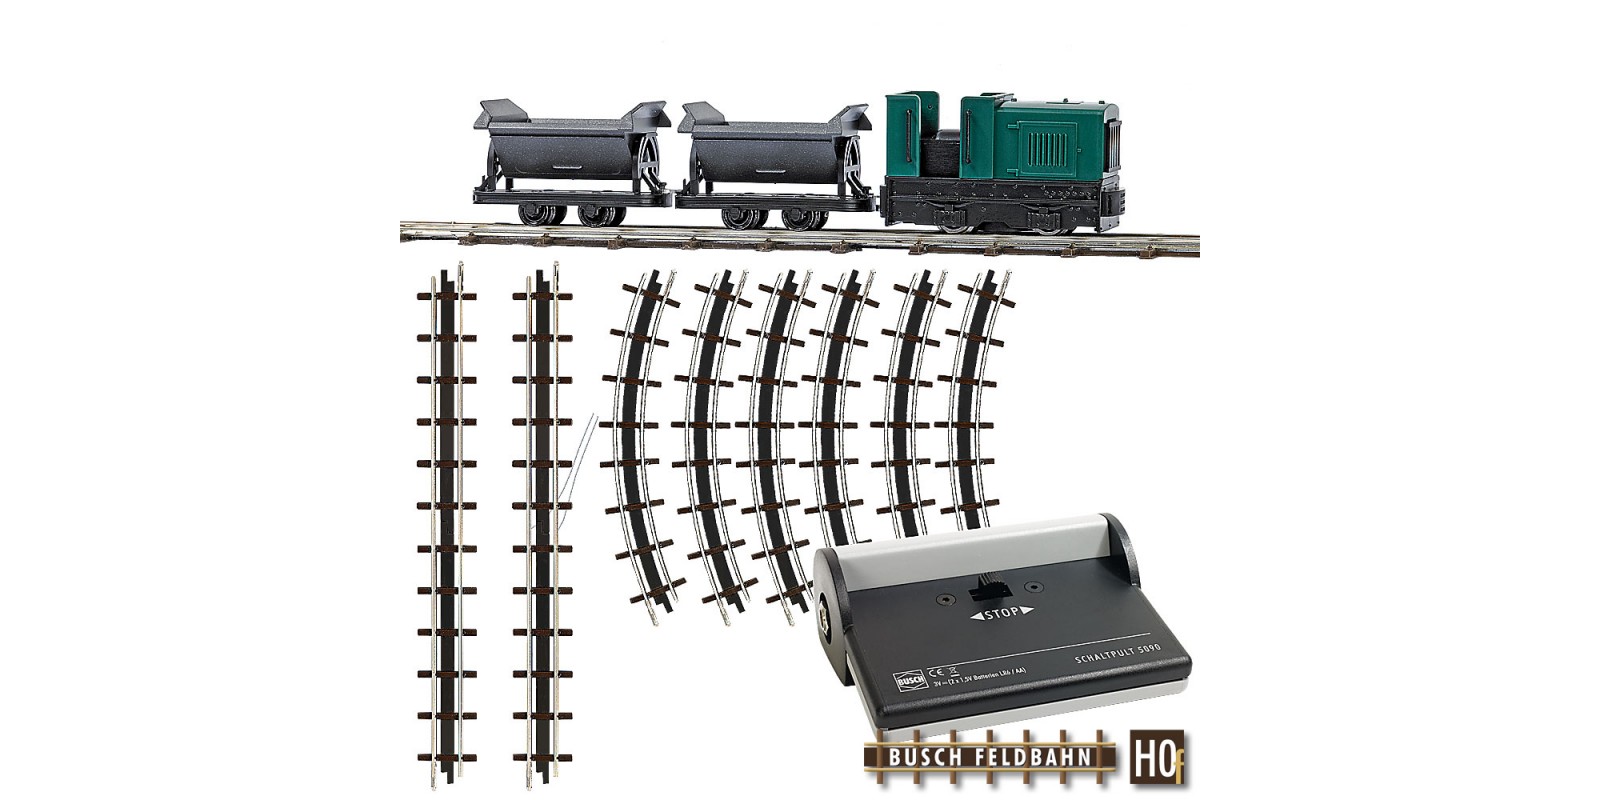 BU12000 Narrow Gauge Railroad Starter Set